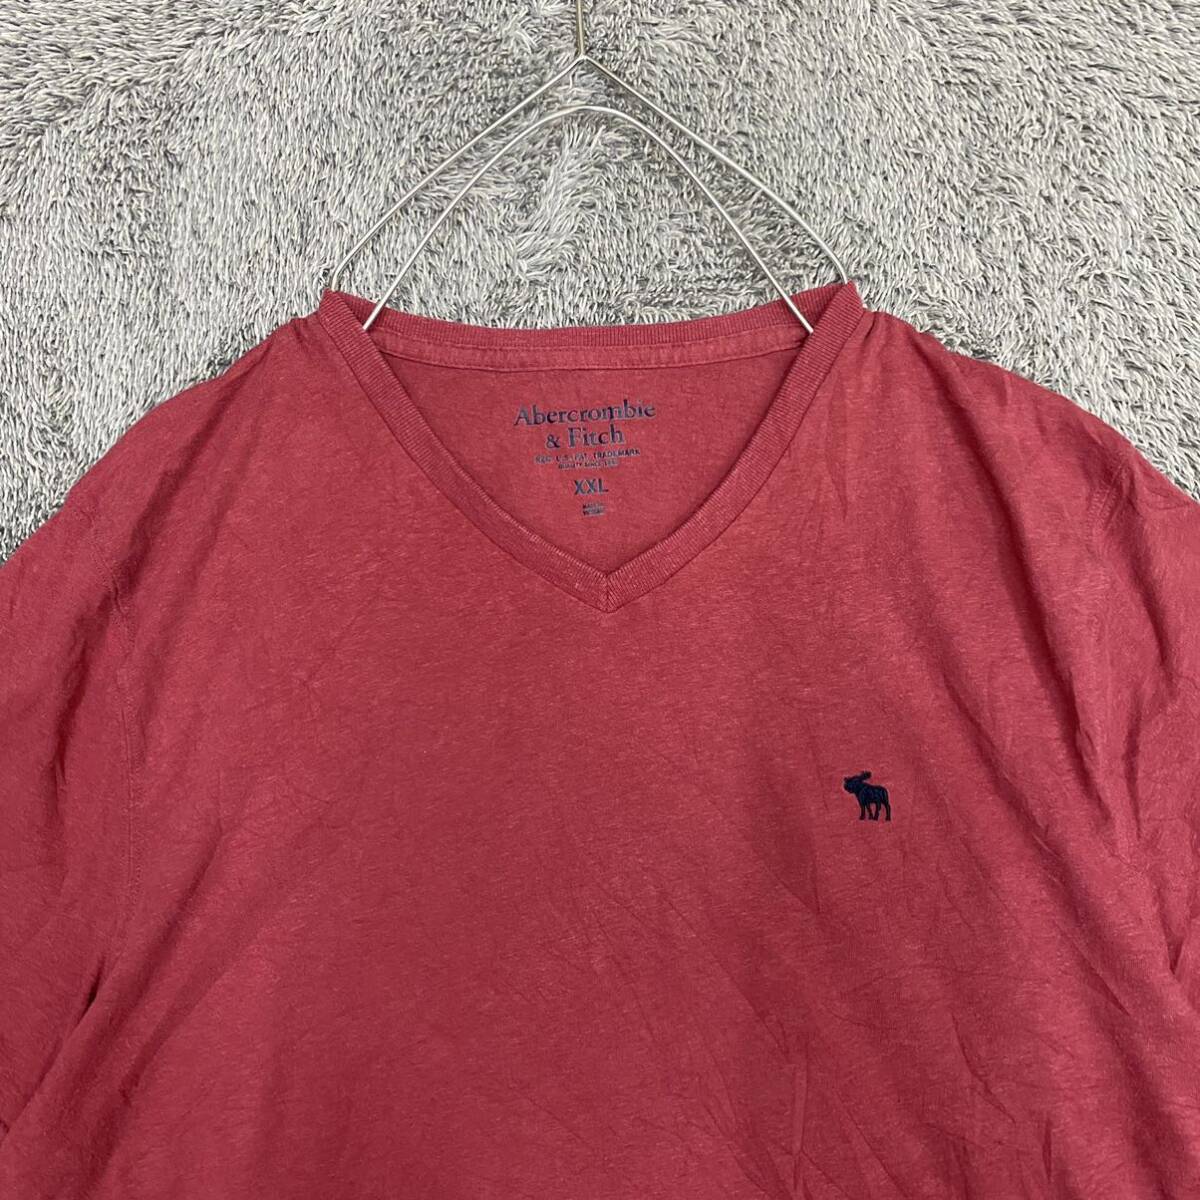 Abercrombie & Fitch アバクロ Tシャツ 半袖カットソー Vネック サイズXXL レッド 赤 メンズ トップス 最落なし （O19）の画像3